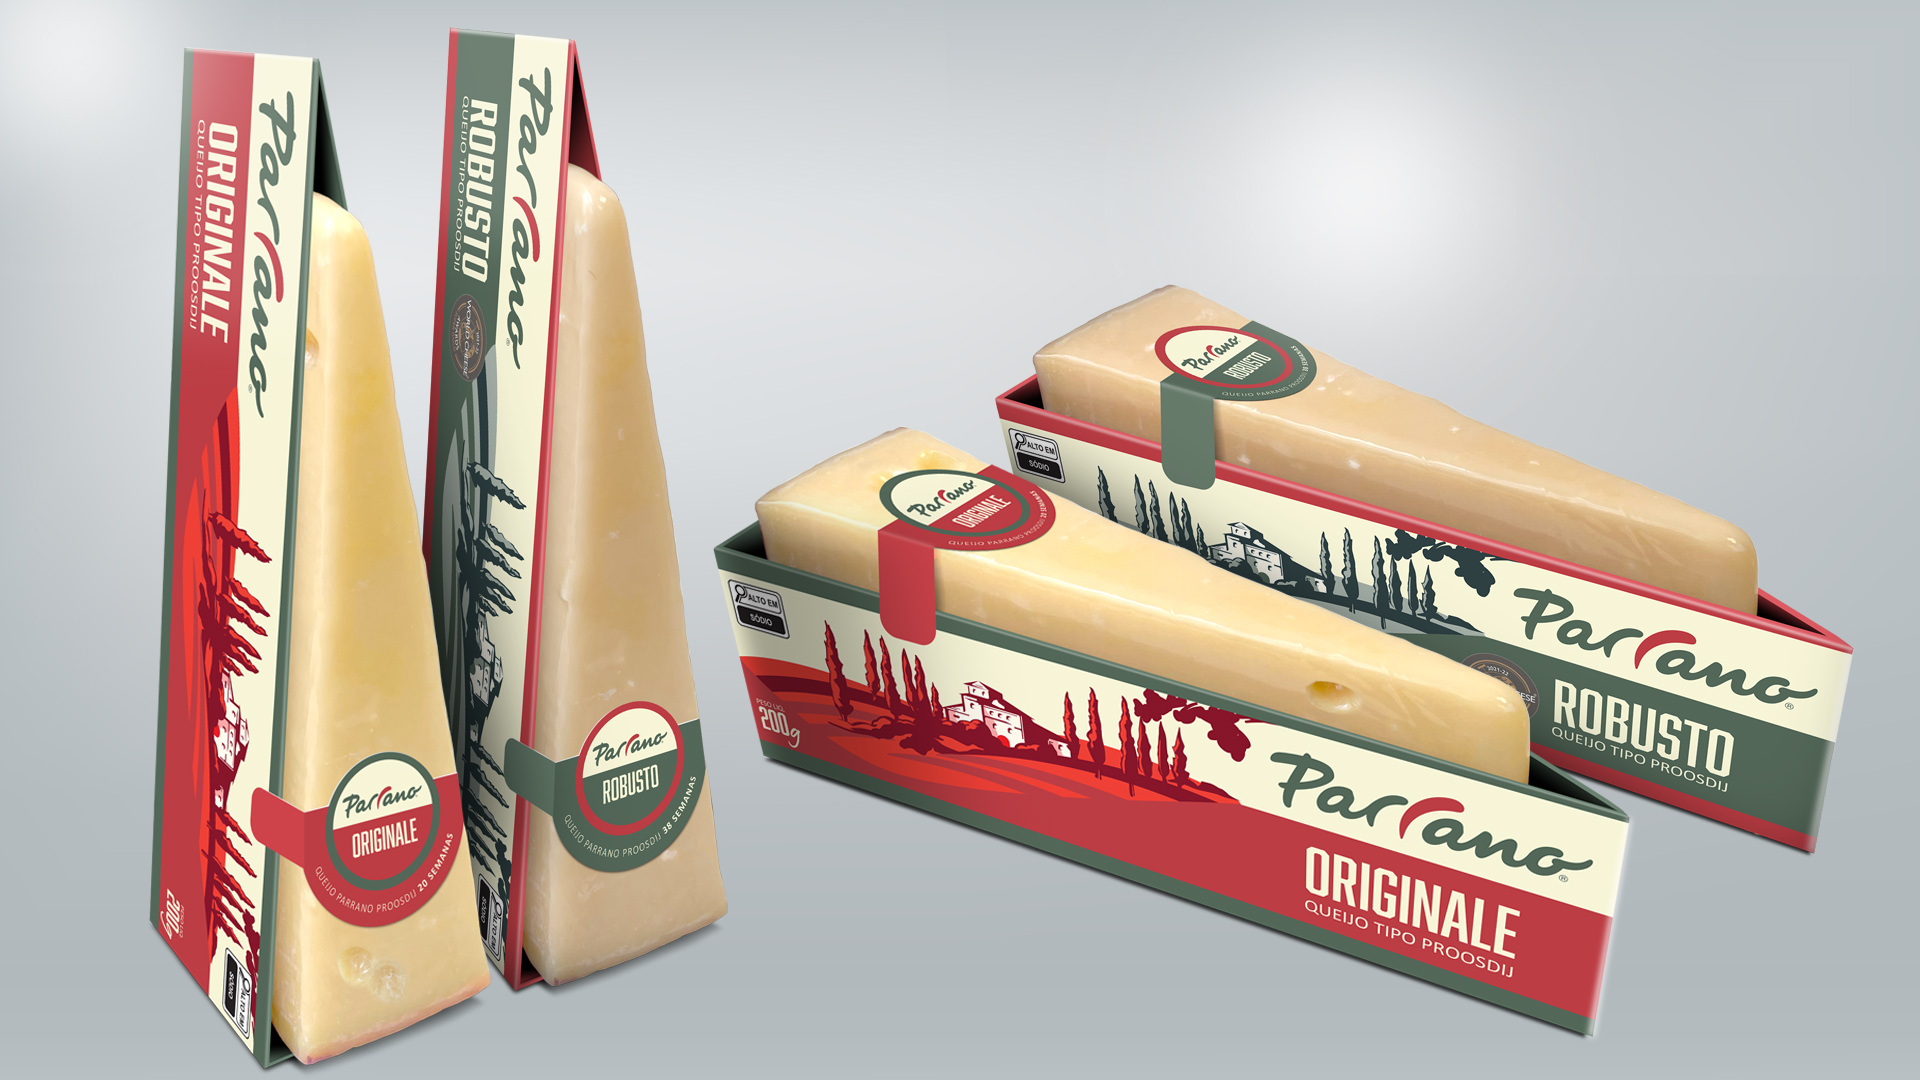 Imagem das embalagens dos queijos da marca Parrano desenvolvidas pelo Estúdio E | Agência de Comunicação